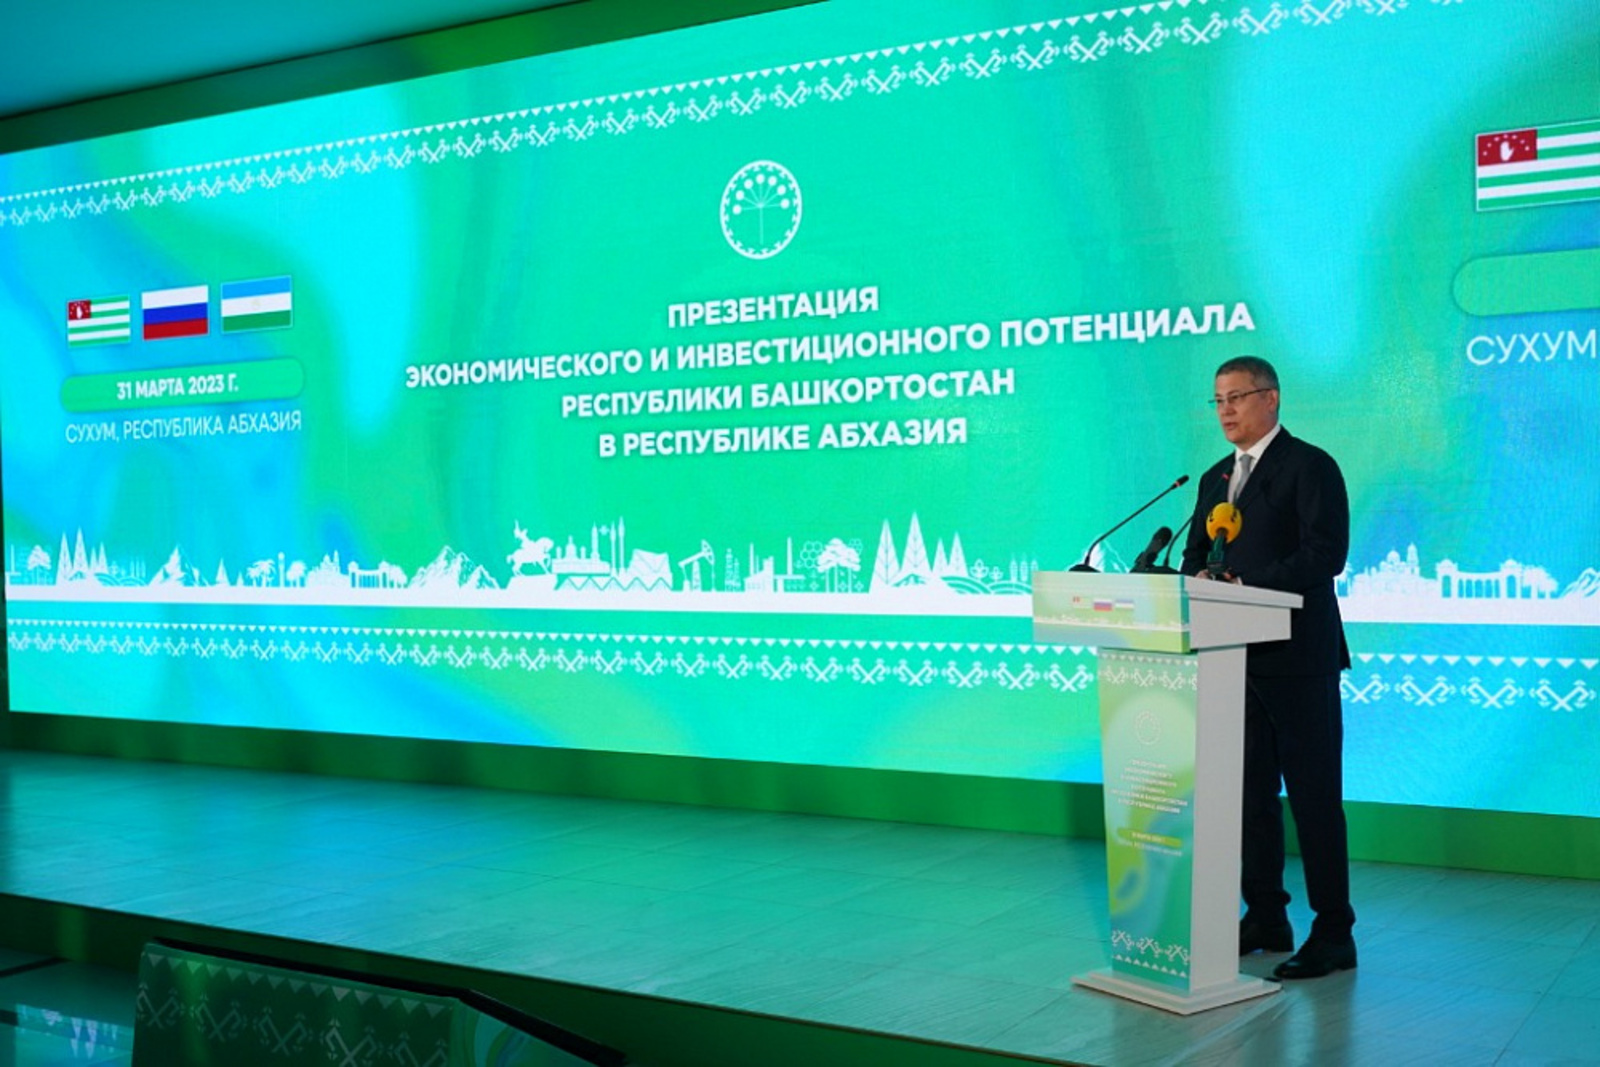 В Абхазии презентовали экономический и инвестиционный потенциал Башкортостана